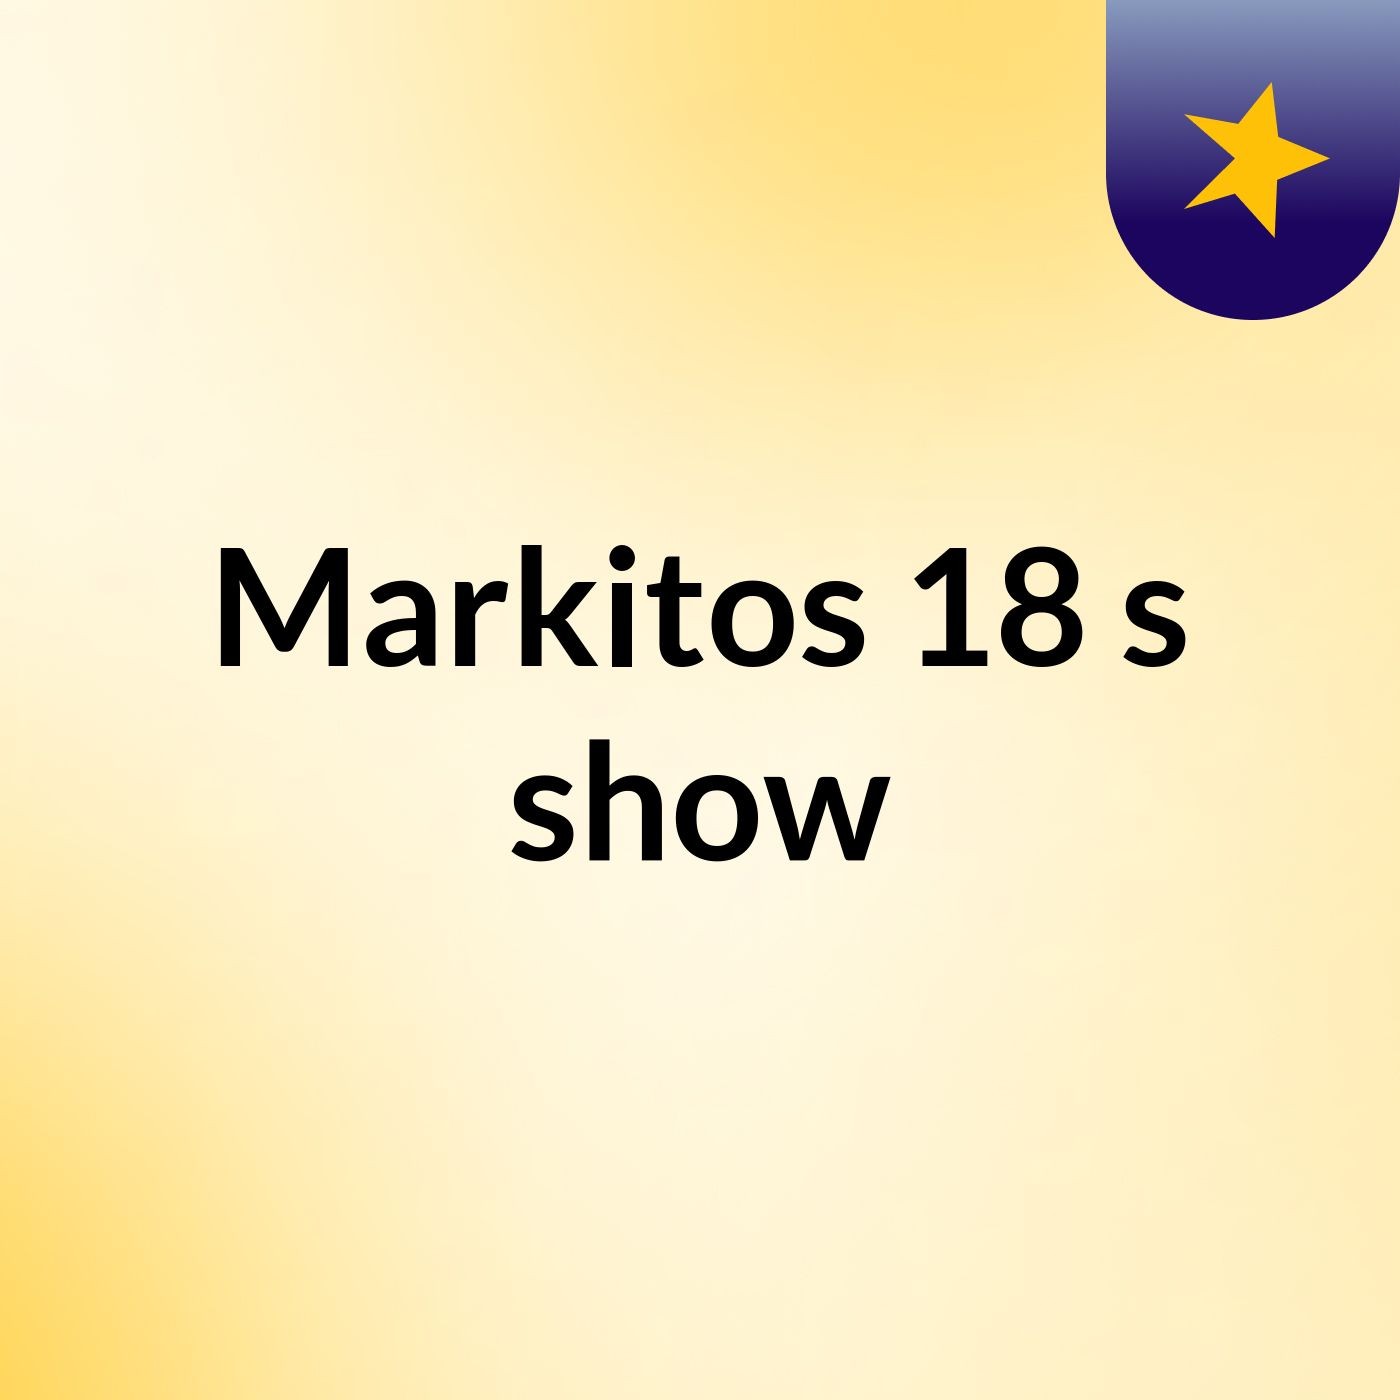 Markitos 18's show